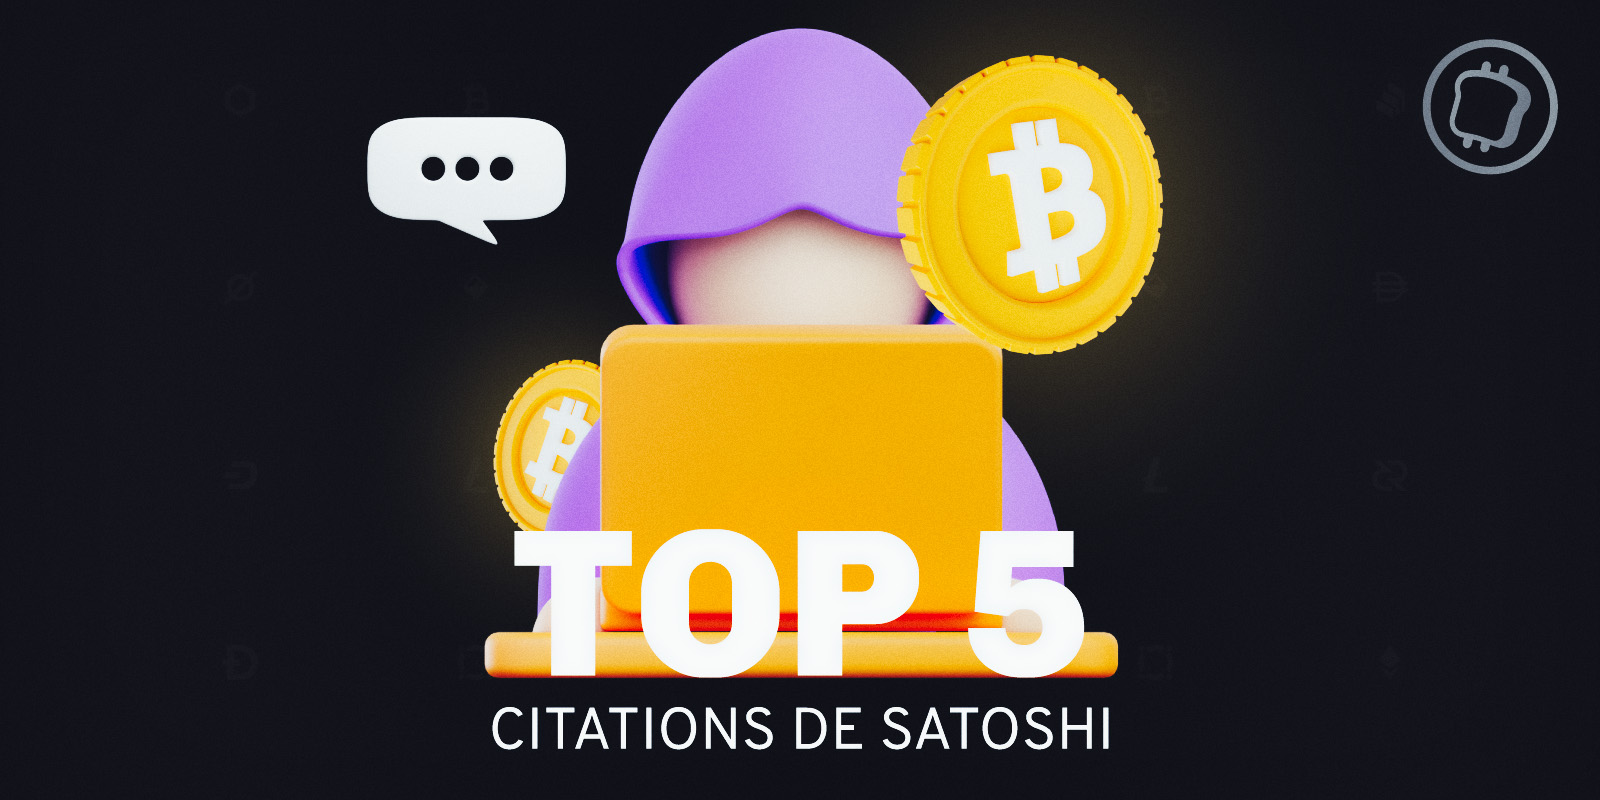 Les 5 citations (prophétiques) de Satoshi Nakamoto, fondateur de Bitcoin (BTC)